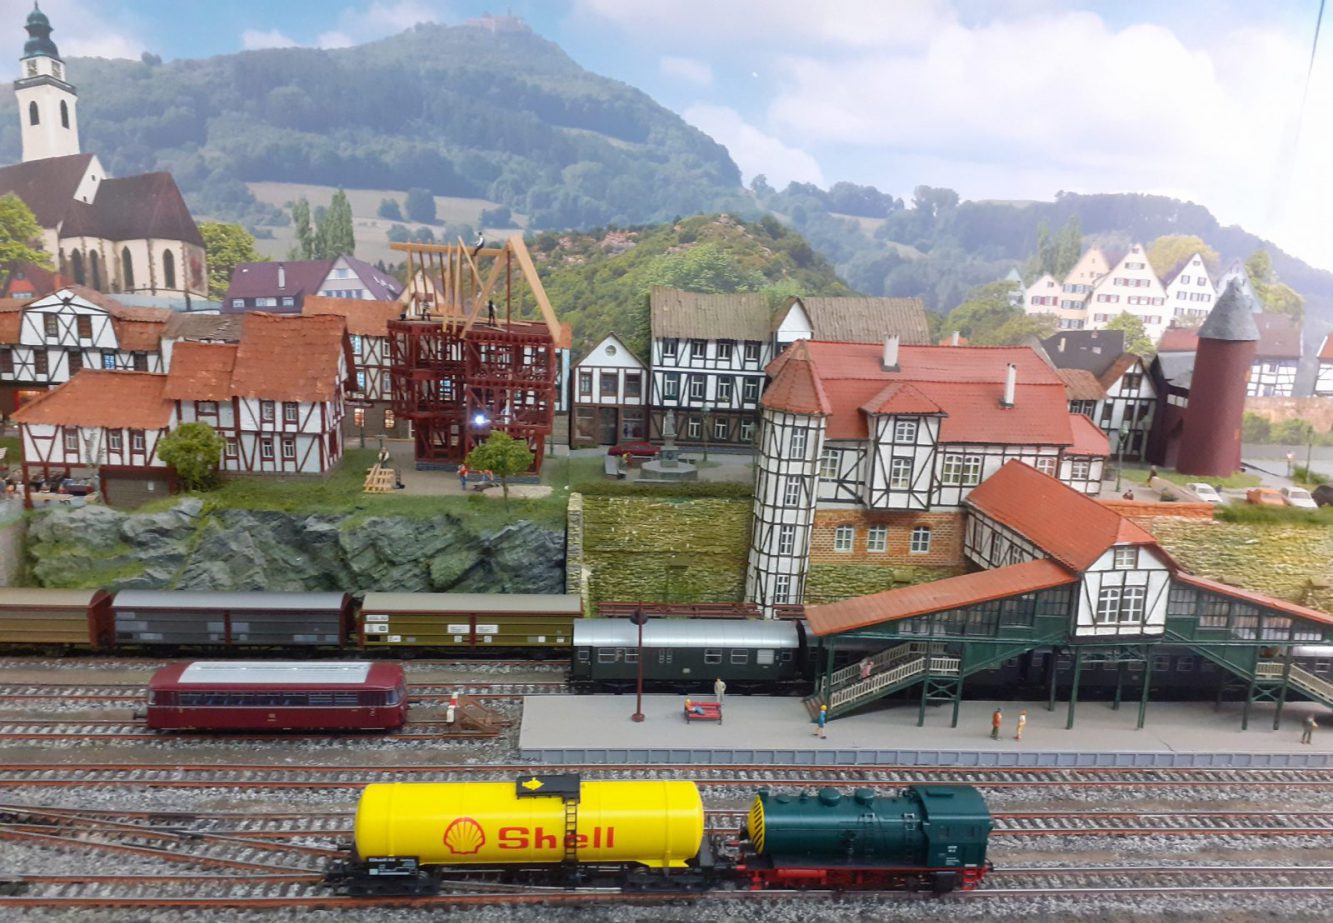 Modell-Eisenbahn-Freunde Gangelt e.V.